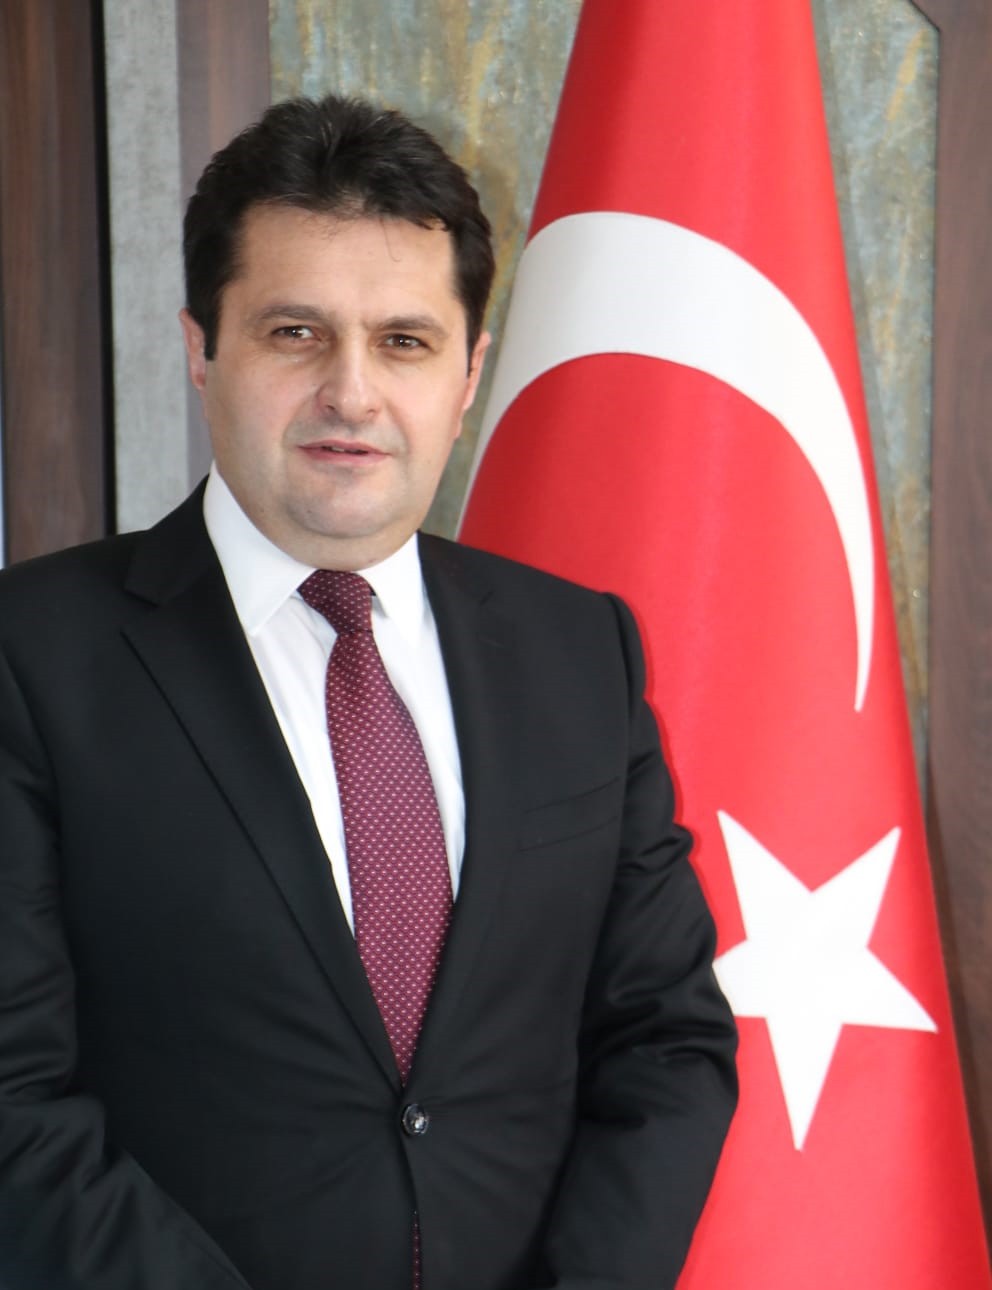 Erzurum İl Milli Eğitim Müdürü Kaygusuz: “Gençlik bir milletin geleceğidir”